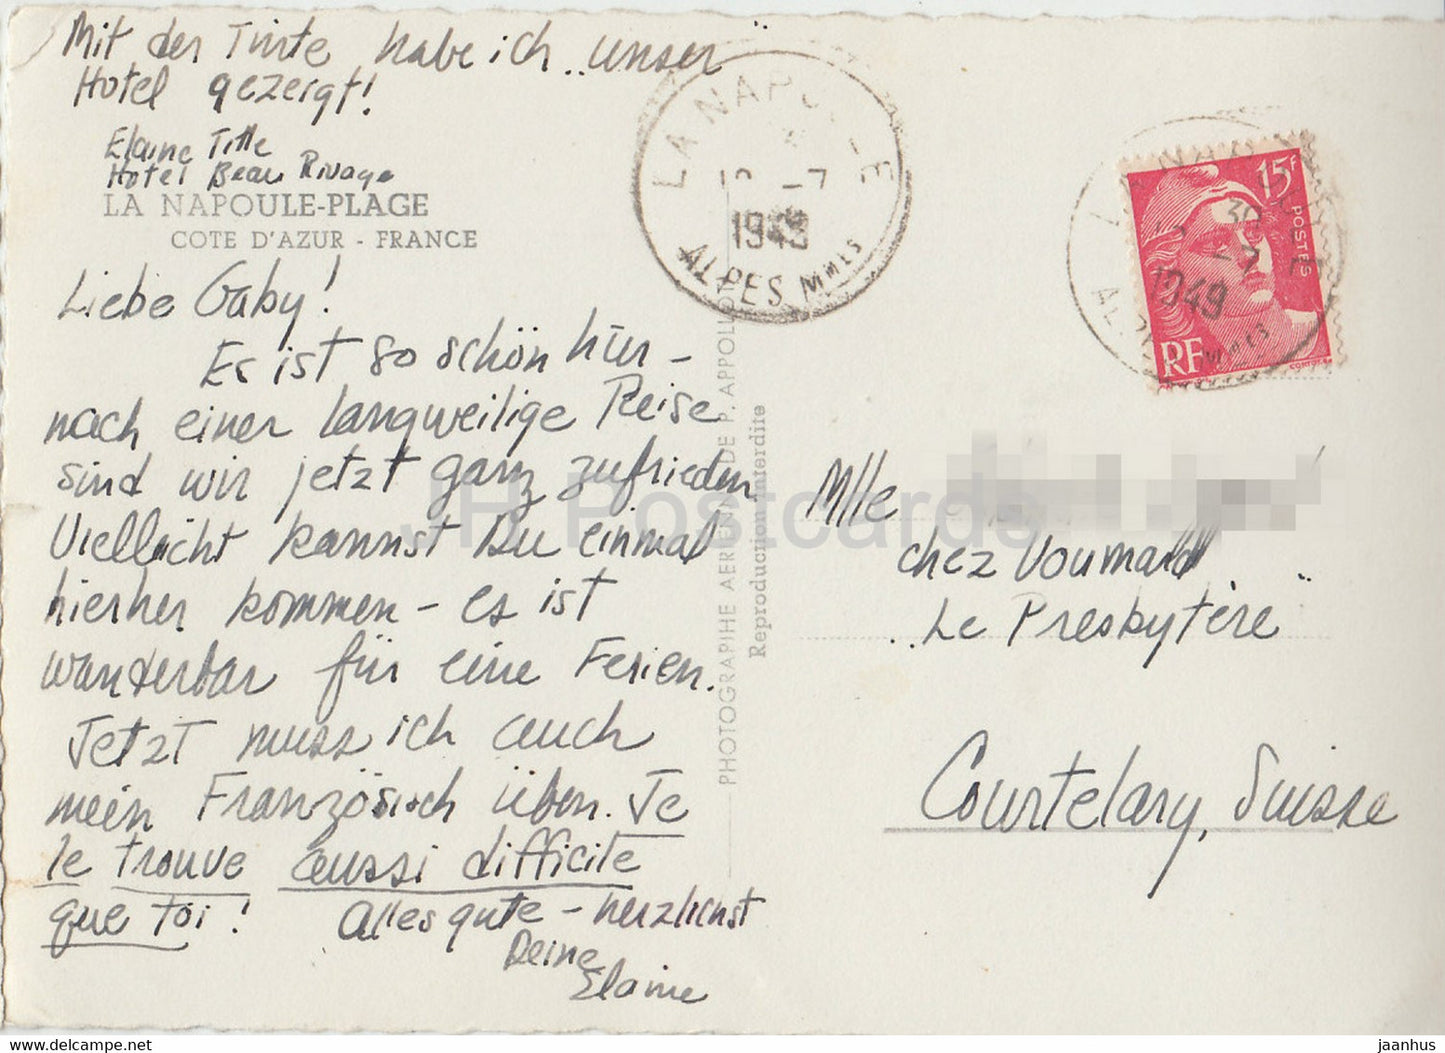 La Napoule Plage - Cote d'Azur - old postcard - 1949 - France - used